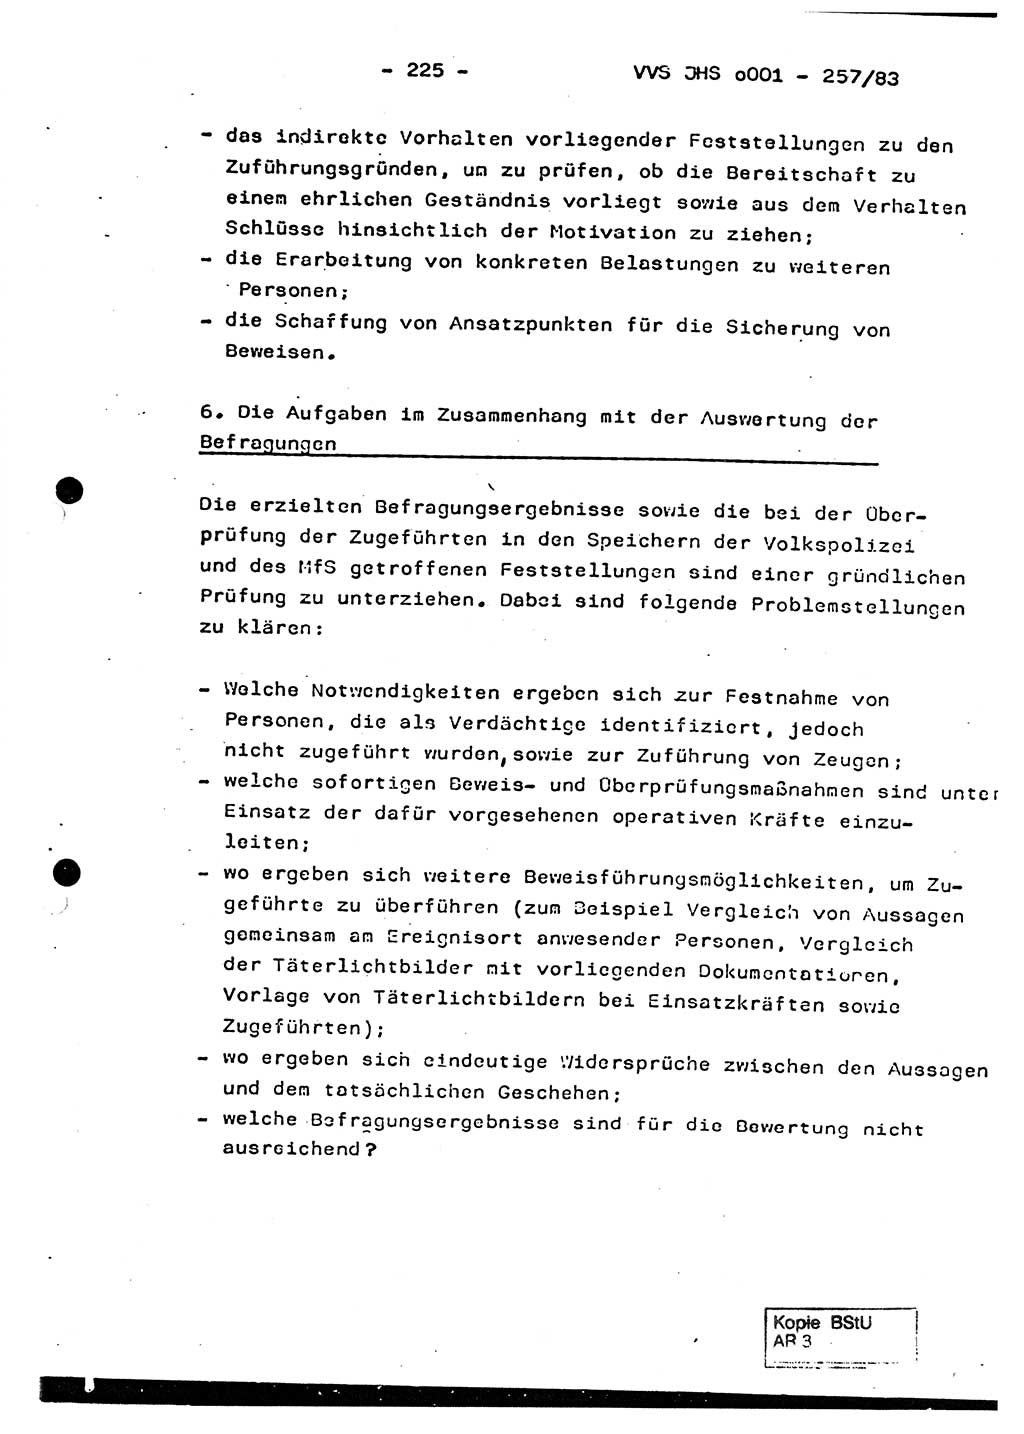 Dissertation, Oberst Helmut Lubas (BV Mdg.), Oberstleutnant Manfred Eschberger (HA IX), Oberleutnant Hans-Jürgen Ludwig (JHS), Ministerium für Staatssicherheit (MfS) [Deutsche Demokratische Republik (DDR)], Juristische Hochschule (JHS), Vertrauliche Verschlußsache (VVS) o001-257/83, Potsdam 1983, Seite 225 (Diss. MfS DDR JHS VVS o001-257/83 1983, S. 225)